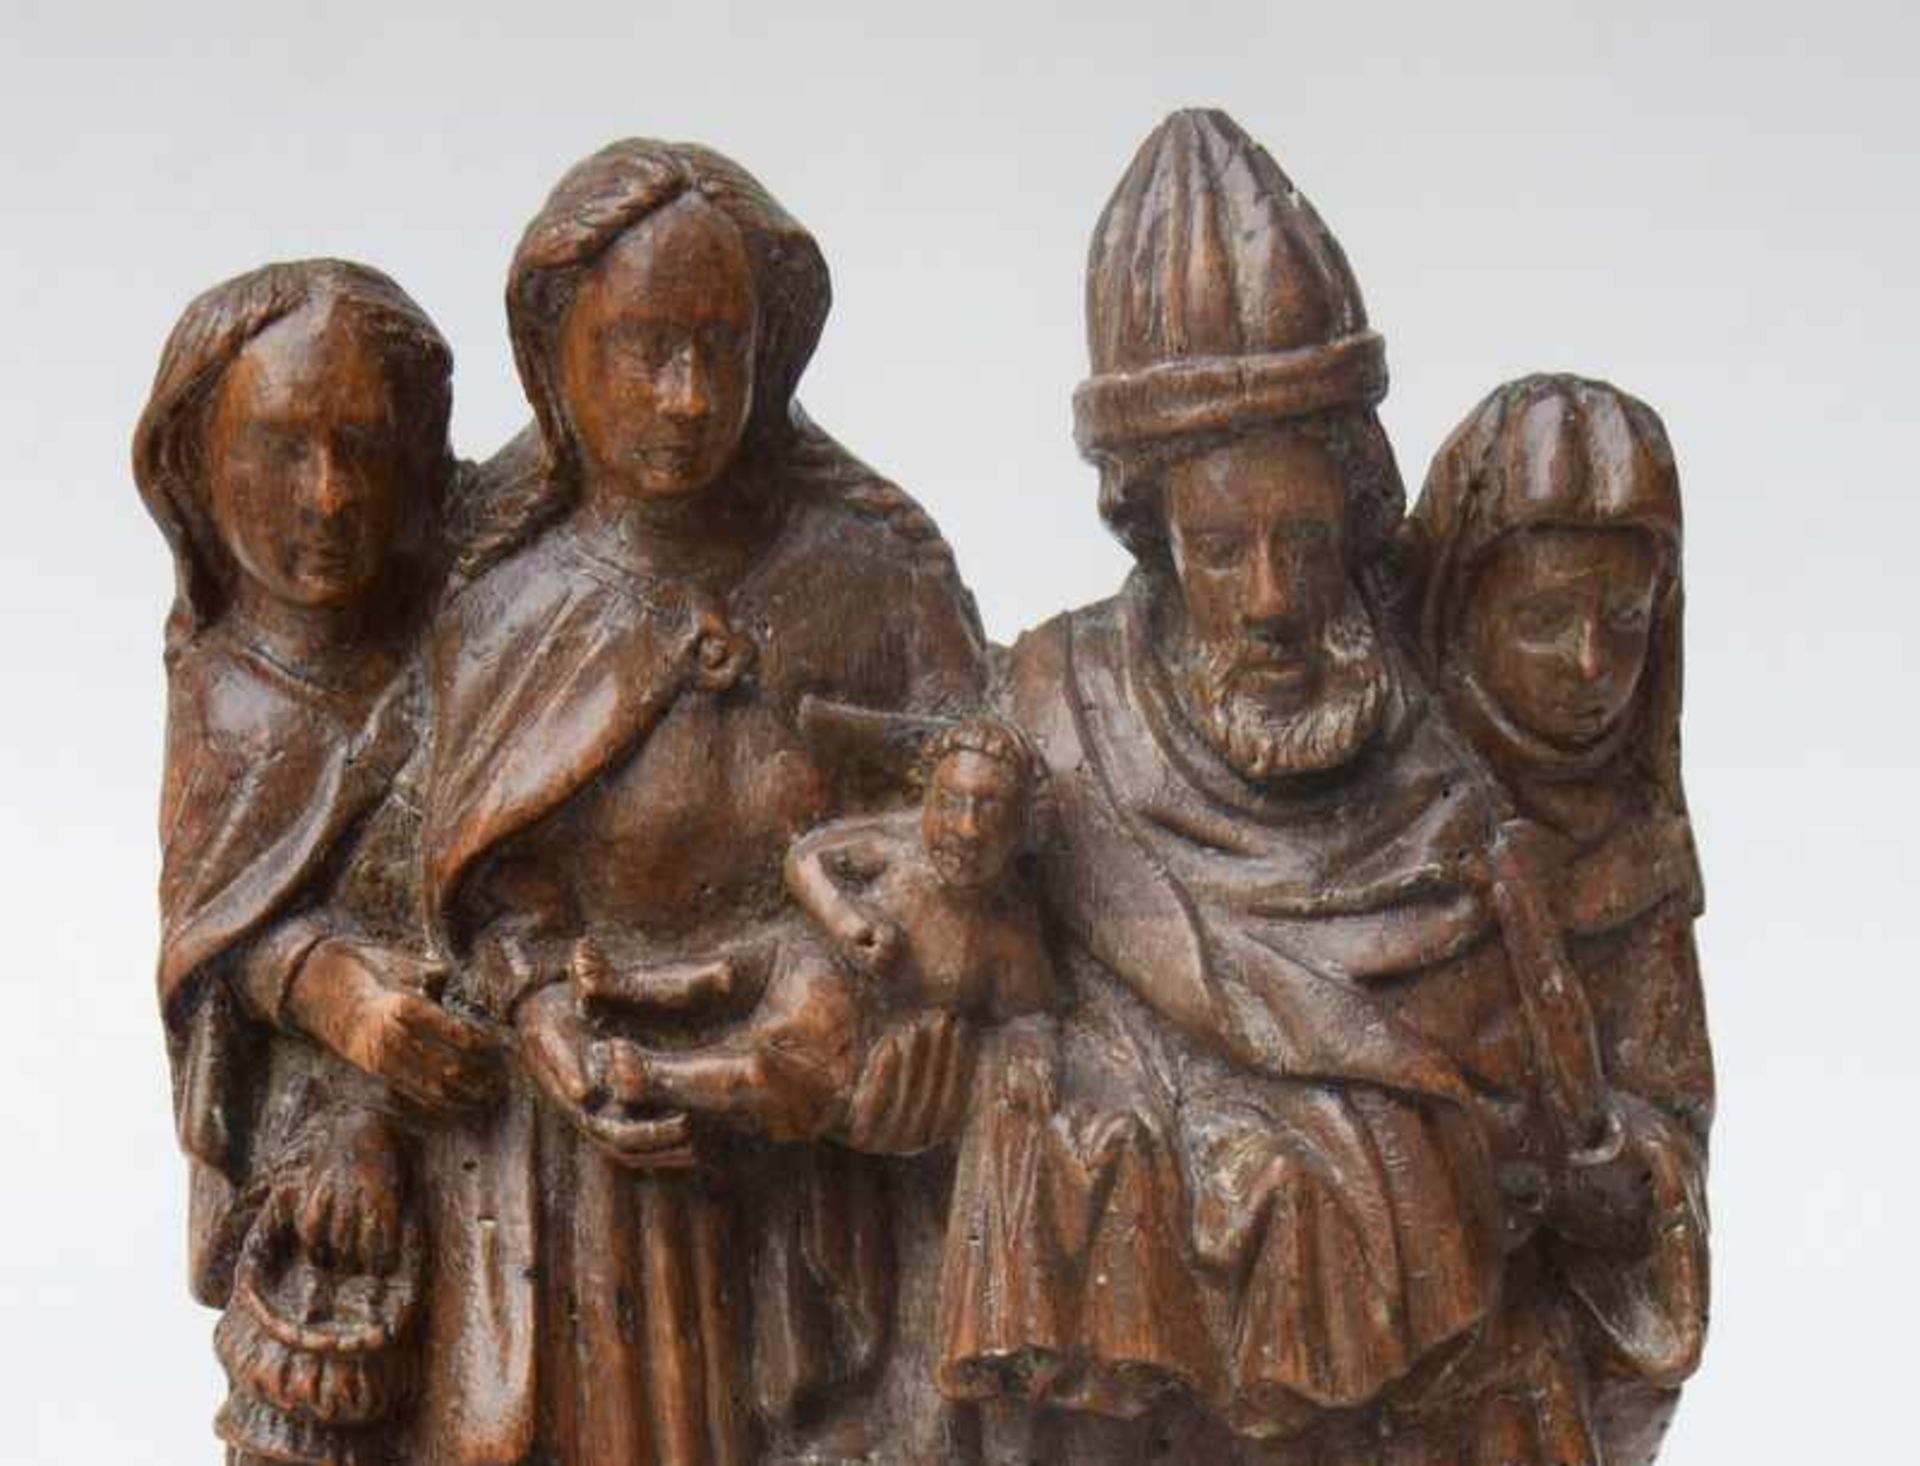 Reliefschnitzerei, Beschneidung Christi, Flämisch, 15. Jhd.< - Bild 2 aus 4